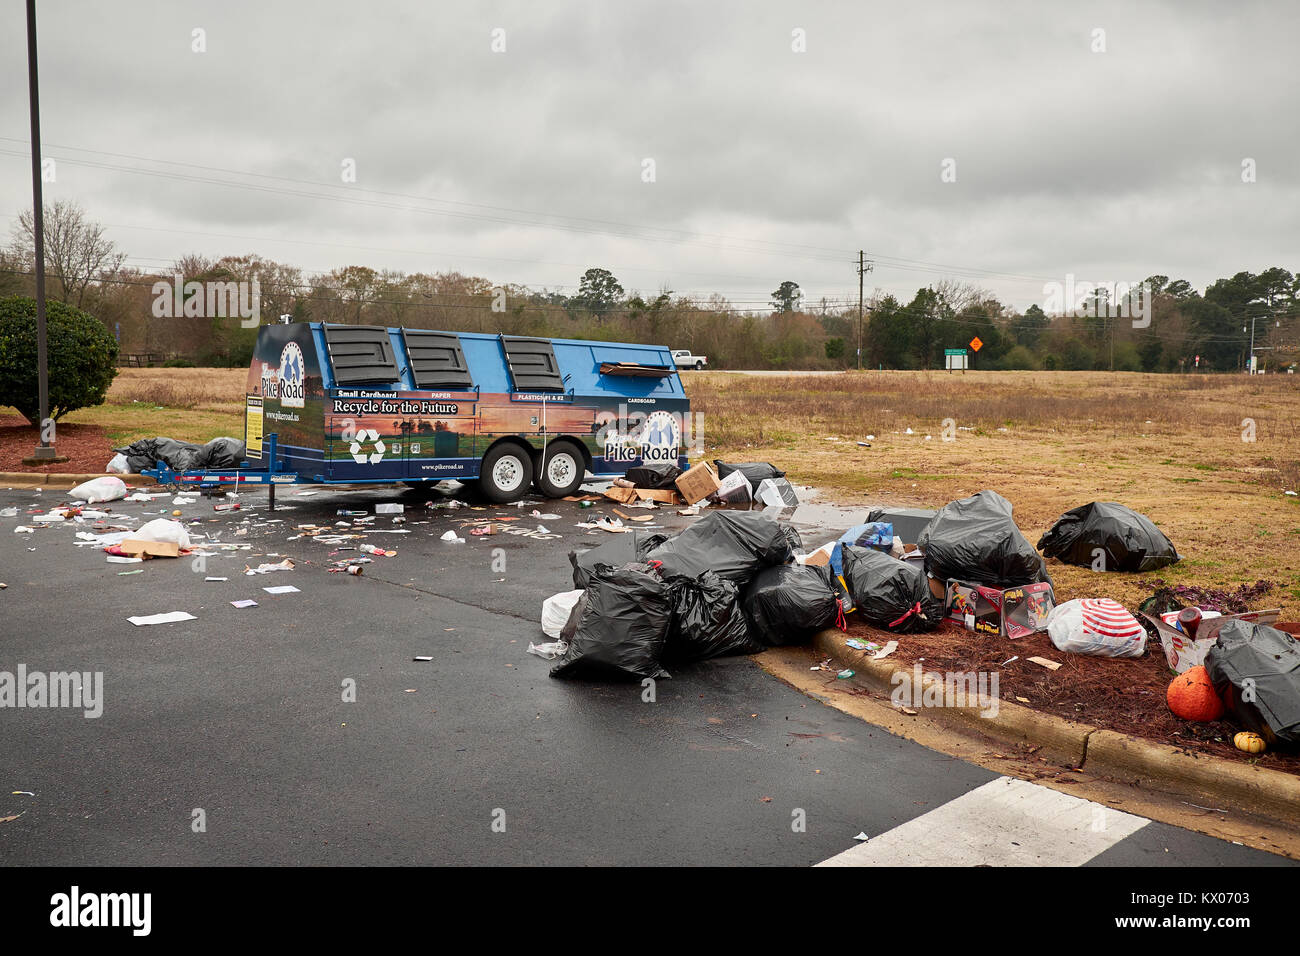 Desbordamiento no recaudadas lío de plástico, cartón y papel en la papelera de reciclaje o esperando recoger en Pike Road Alabama USA. Foto de stock